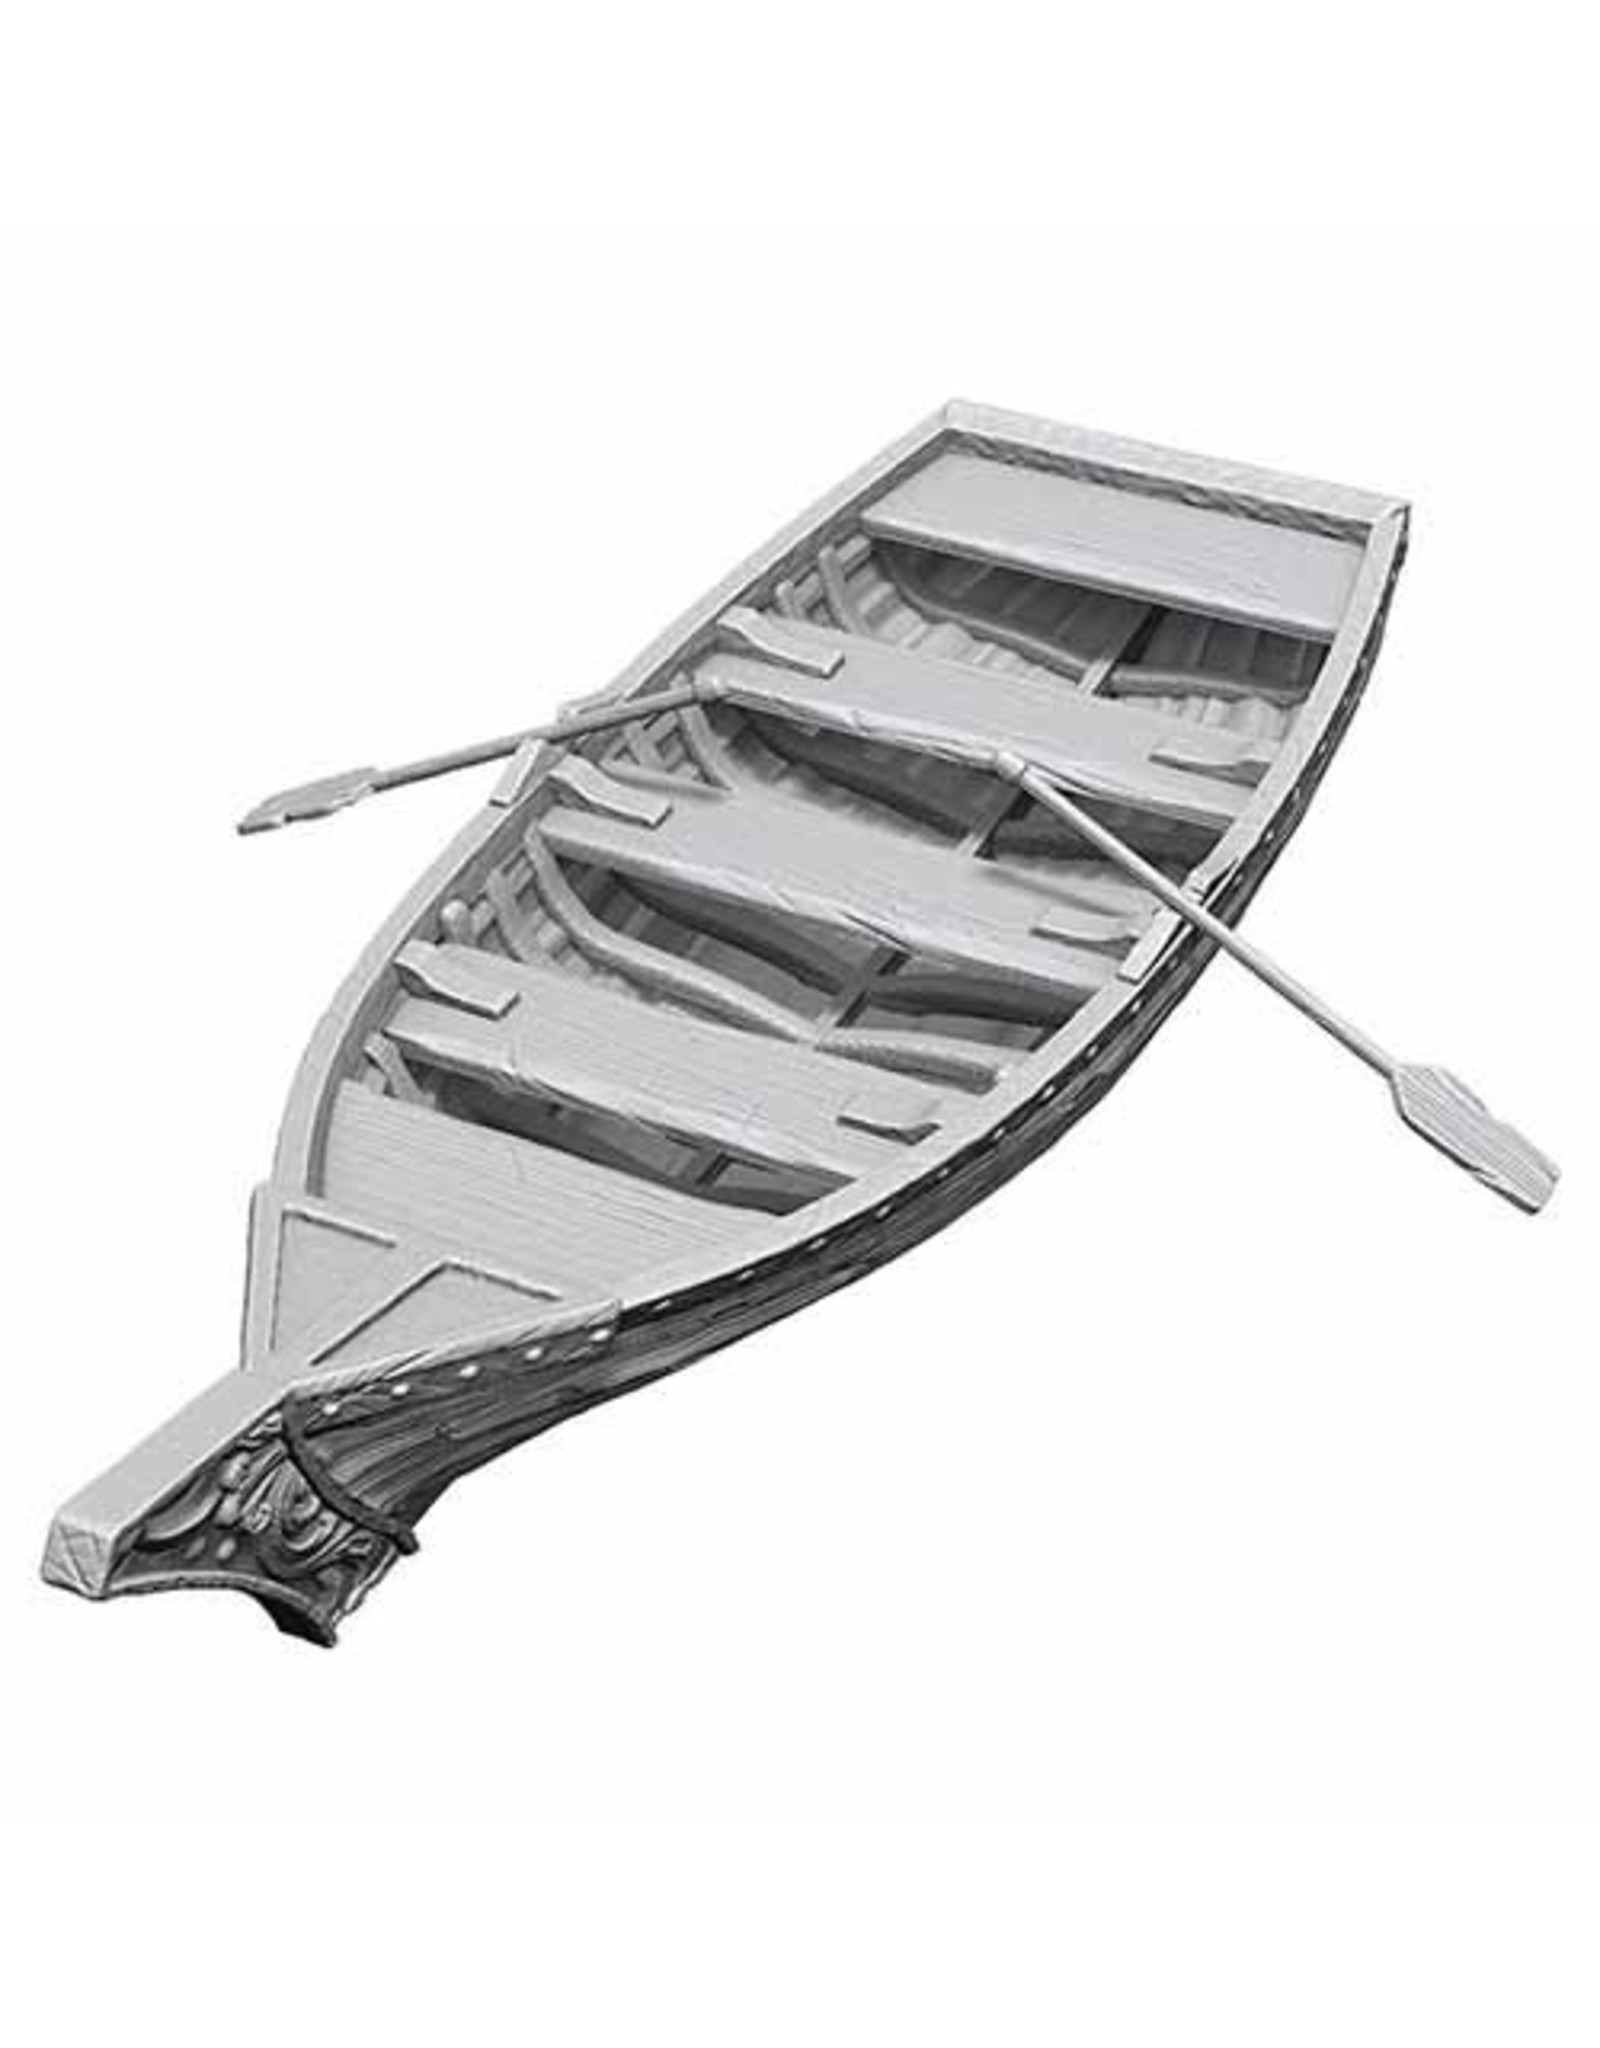 WizKids WizKids Deep Cuts Unpainted Minis: W18 Rowboat & Oars